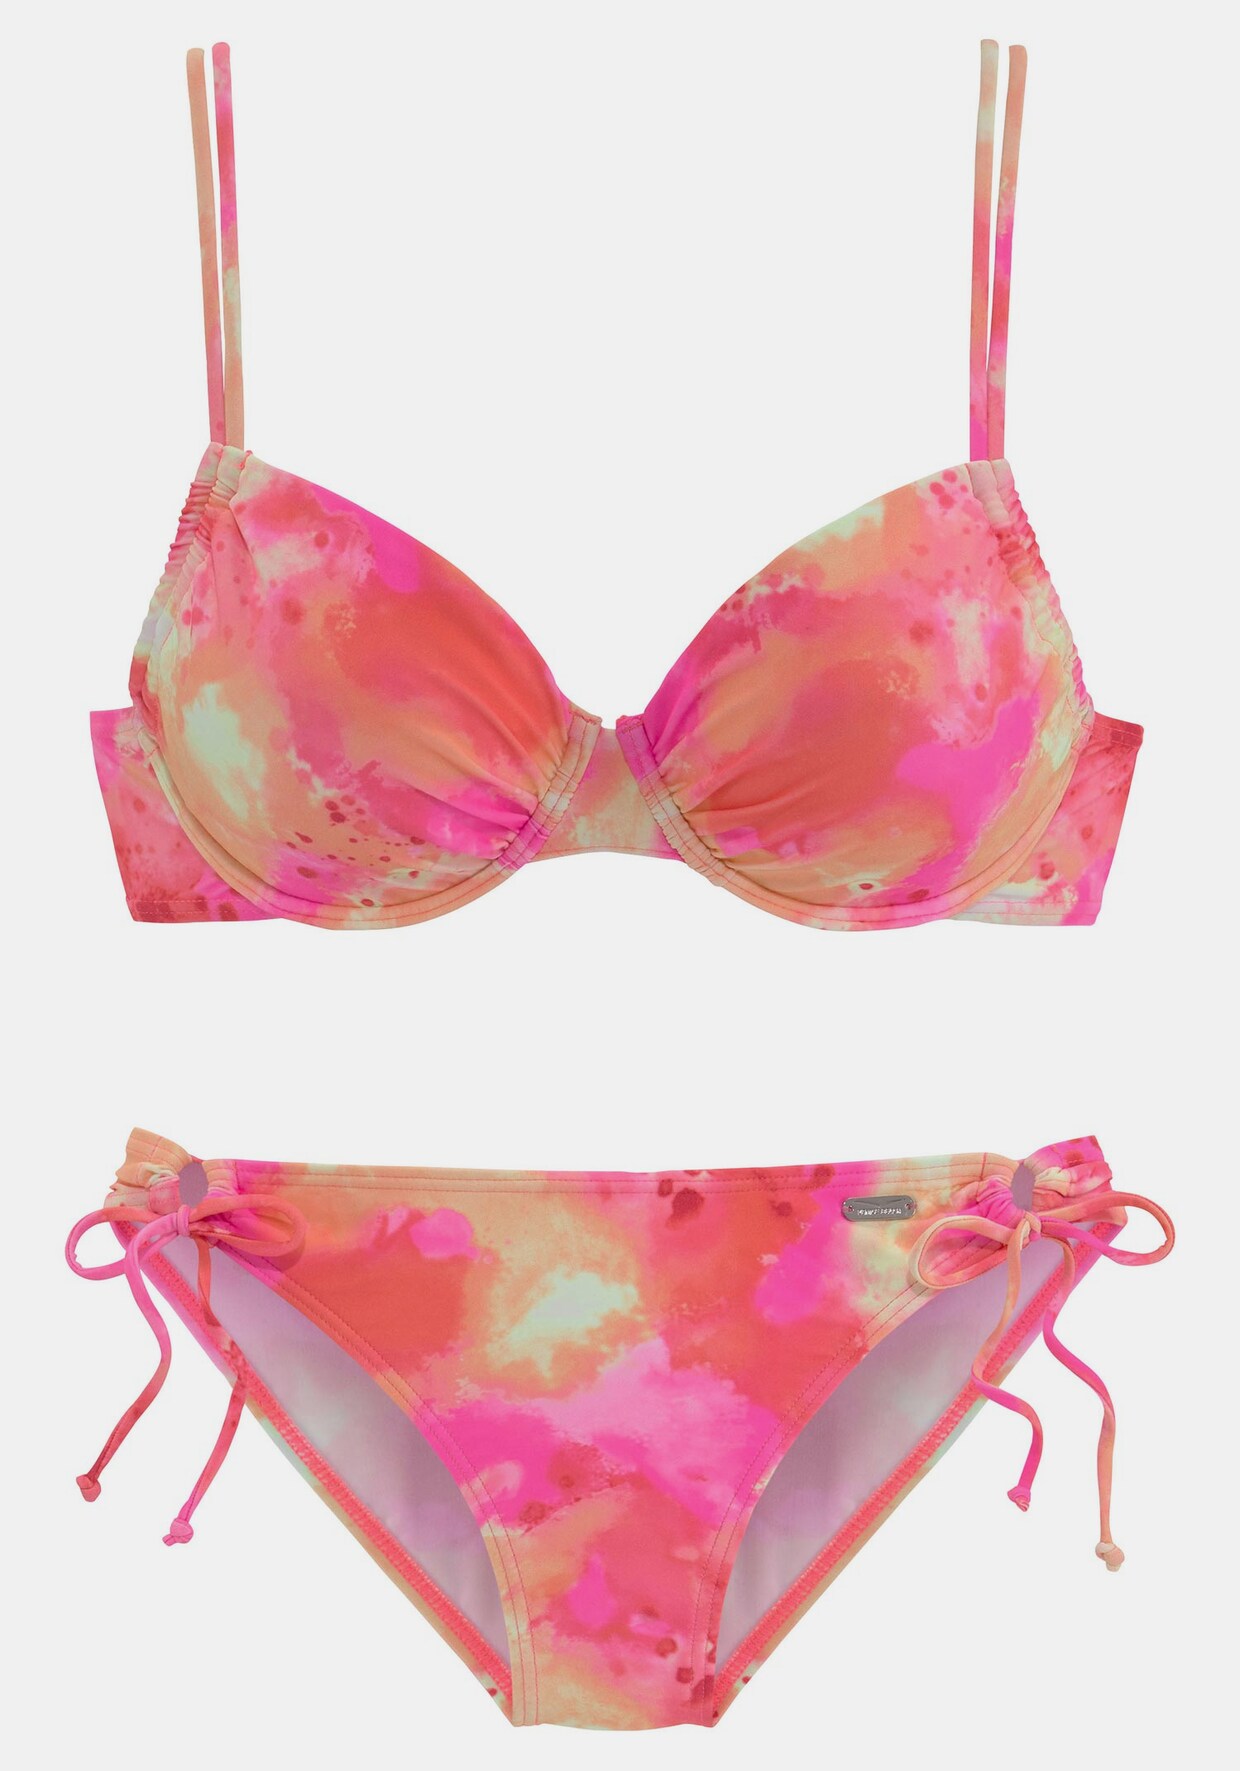 Venice Beach Bügel-Bikini - pink-orange-gelb-bedruckt